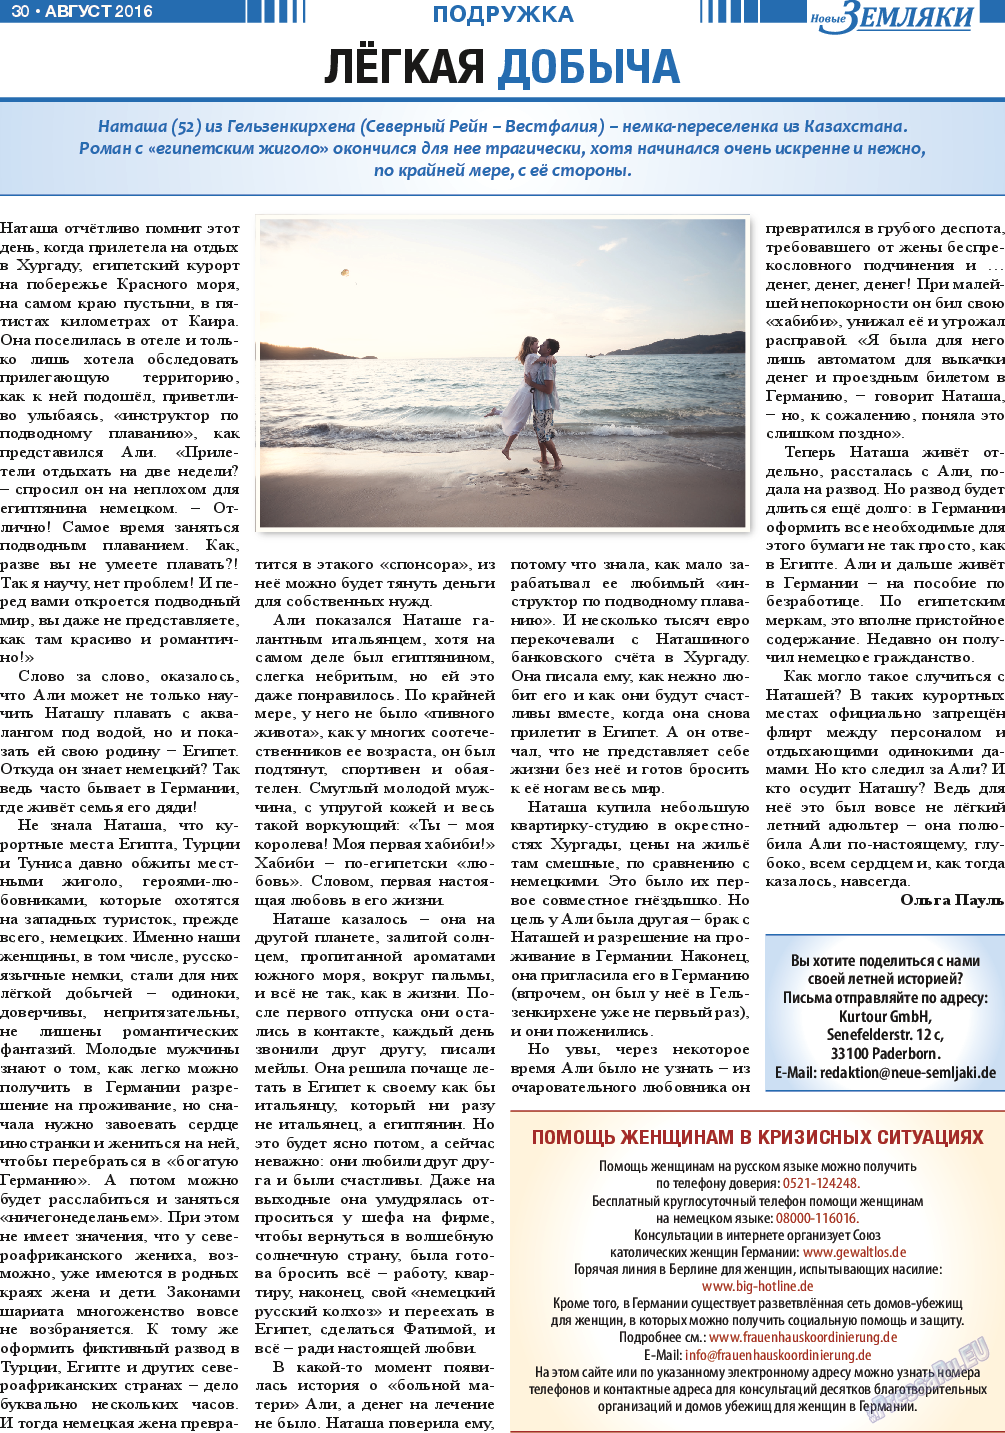 Новые Земляки, газета. 2016 №8 стр.30